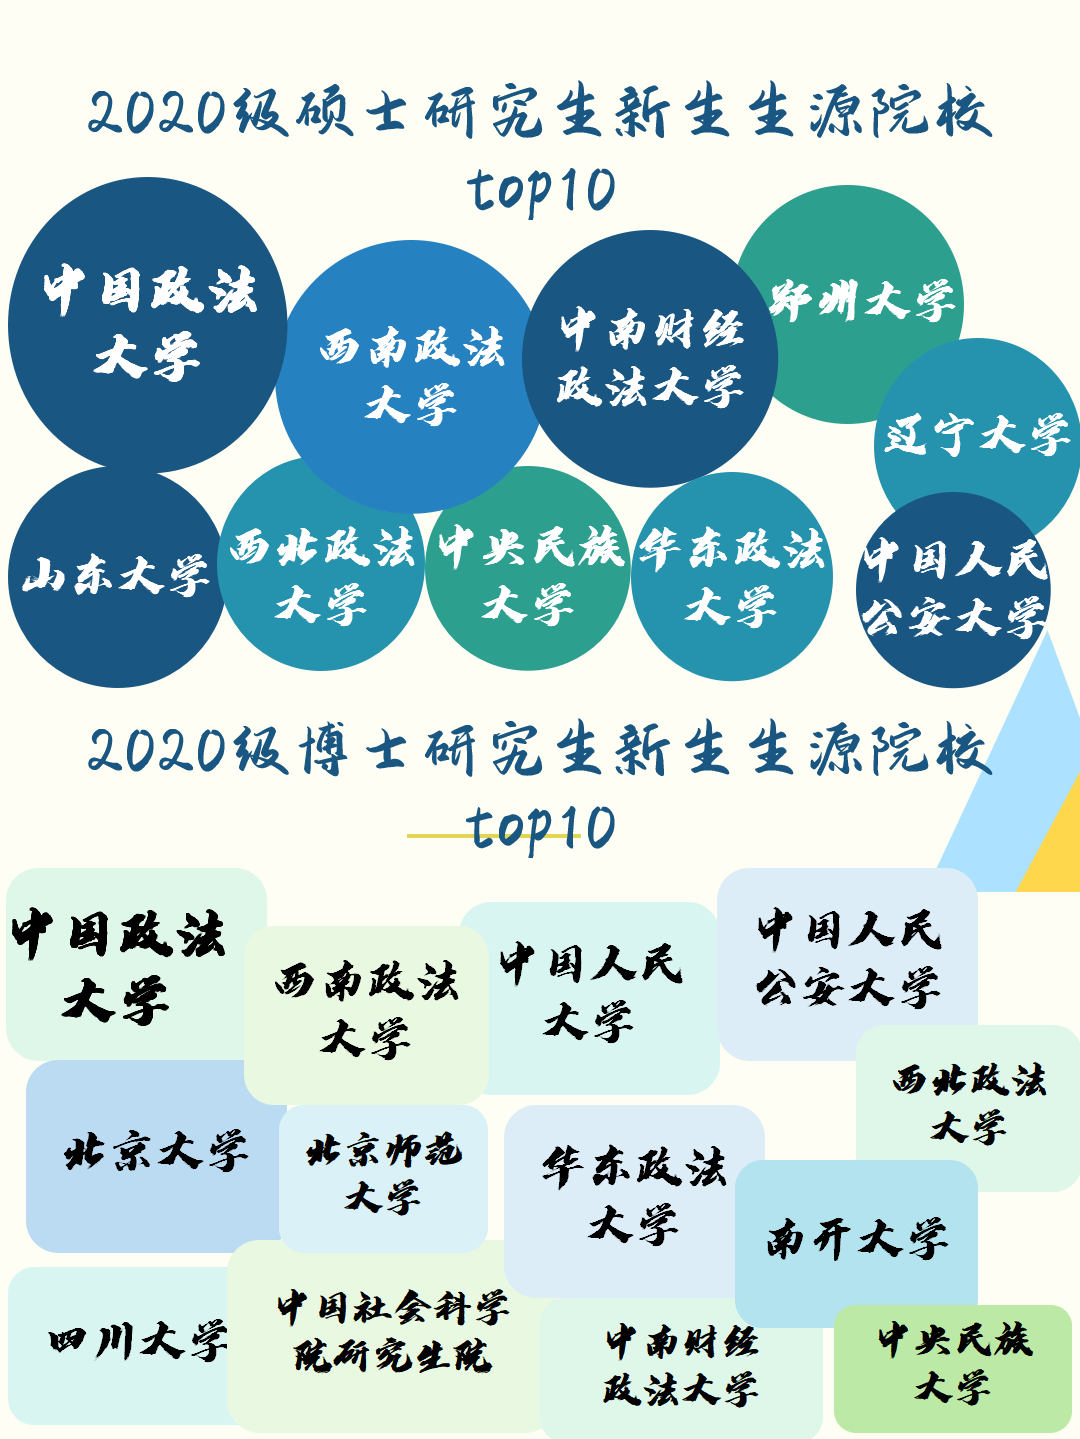 2020级中国政法大学研究生新生大数据来啦！博士311人！